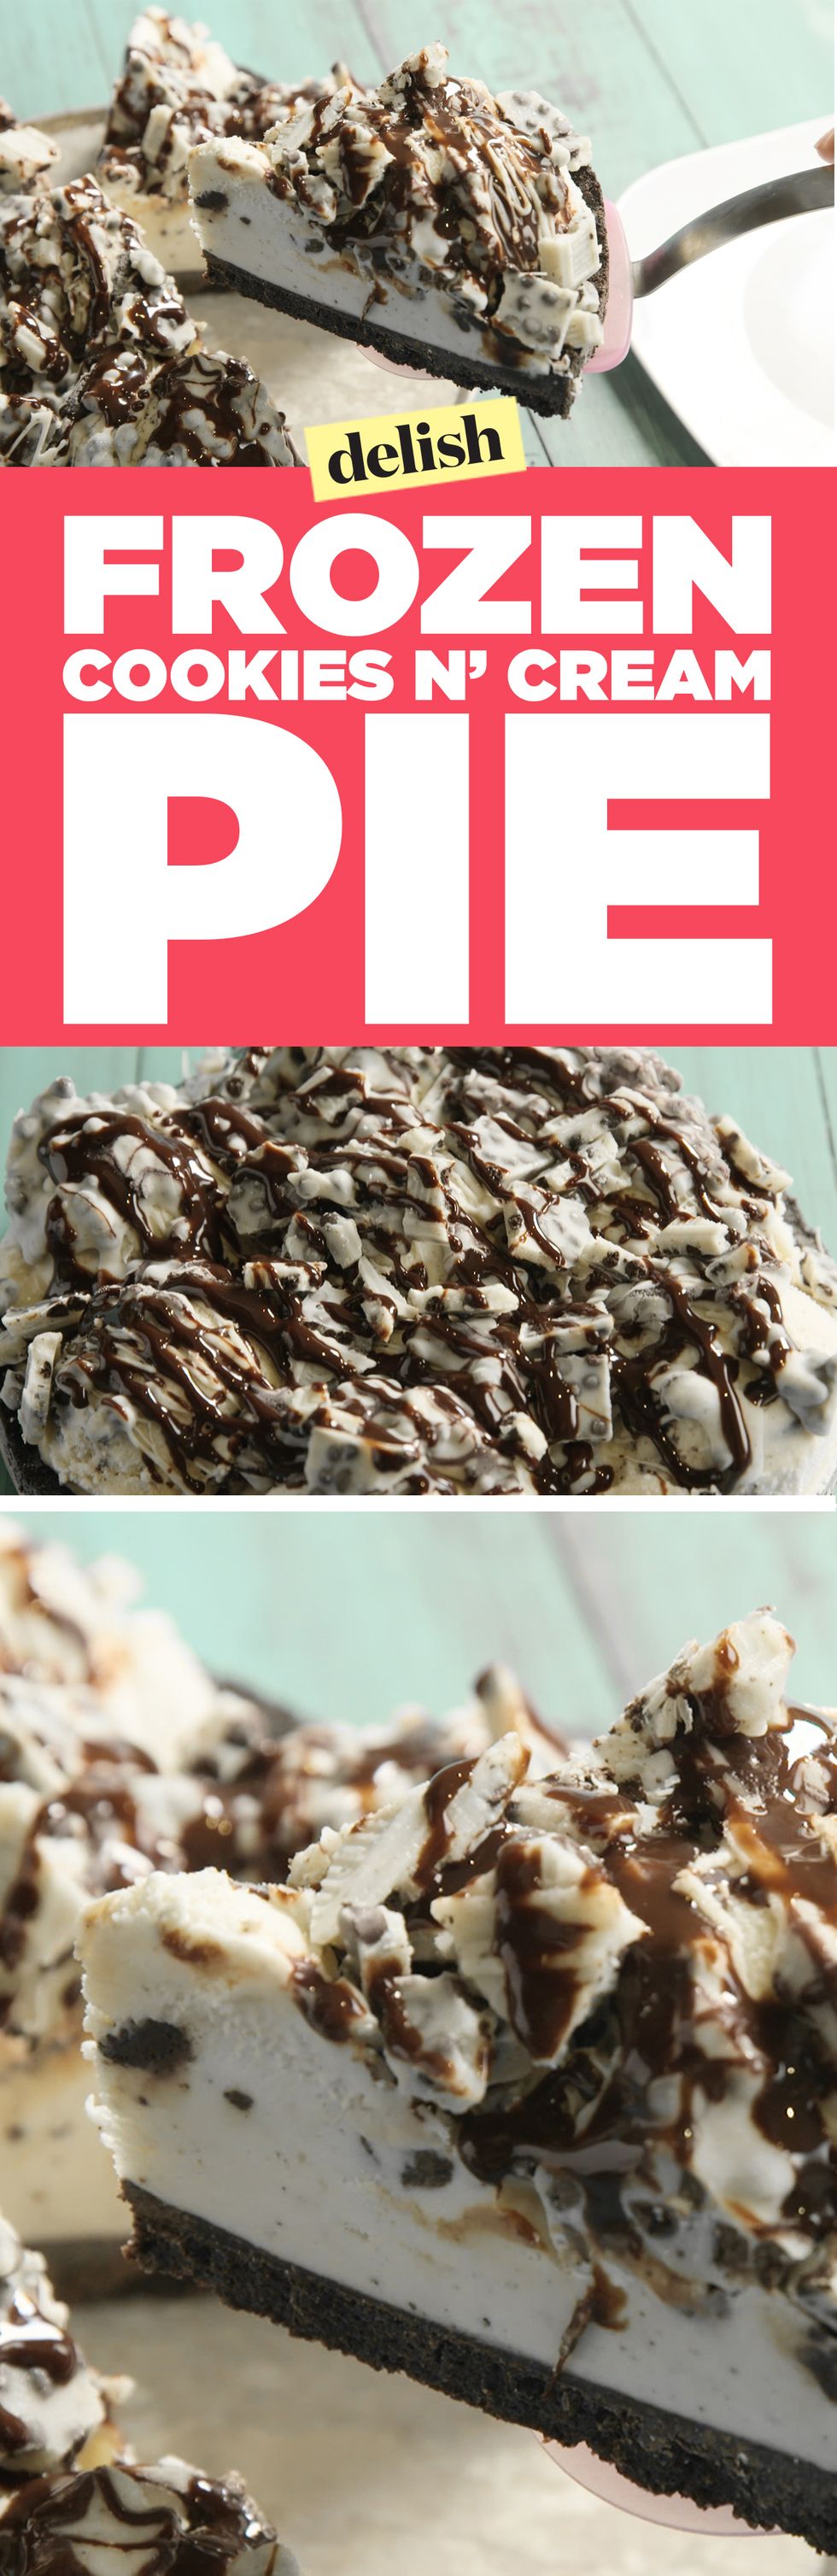 Frozen Cookies & Cream Pie Pinterest